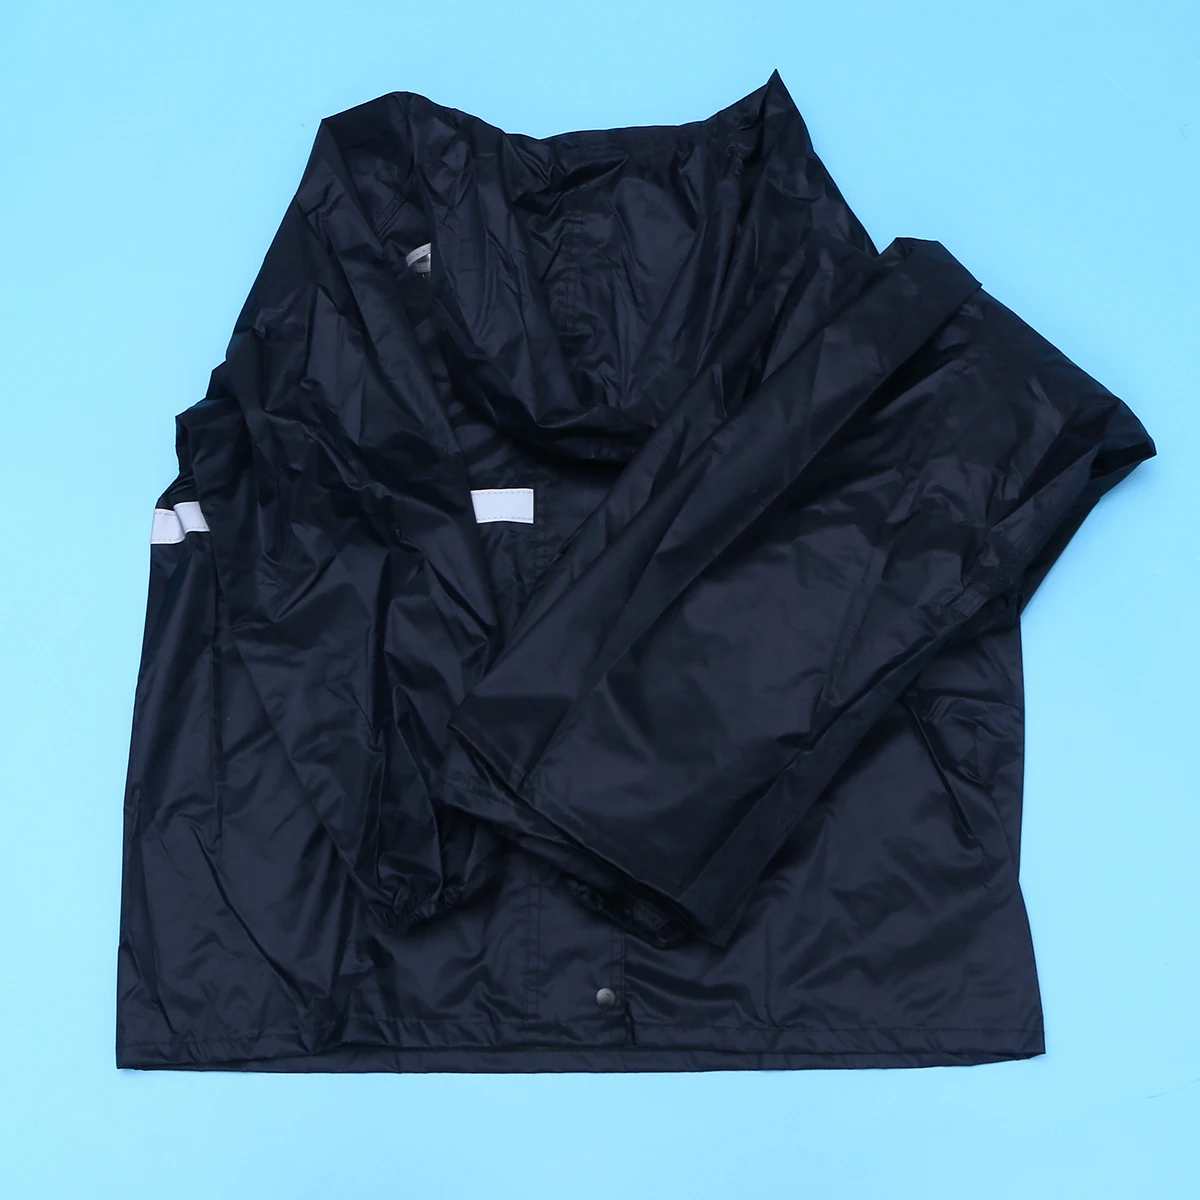 Утепленный дождевик из двух предметов со светоотражающими полосками, размер L-XXXL, моторный дождевик для велопрогулок дождевик; непромокаемые штаны для взрослых мужчин и женщин